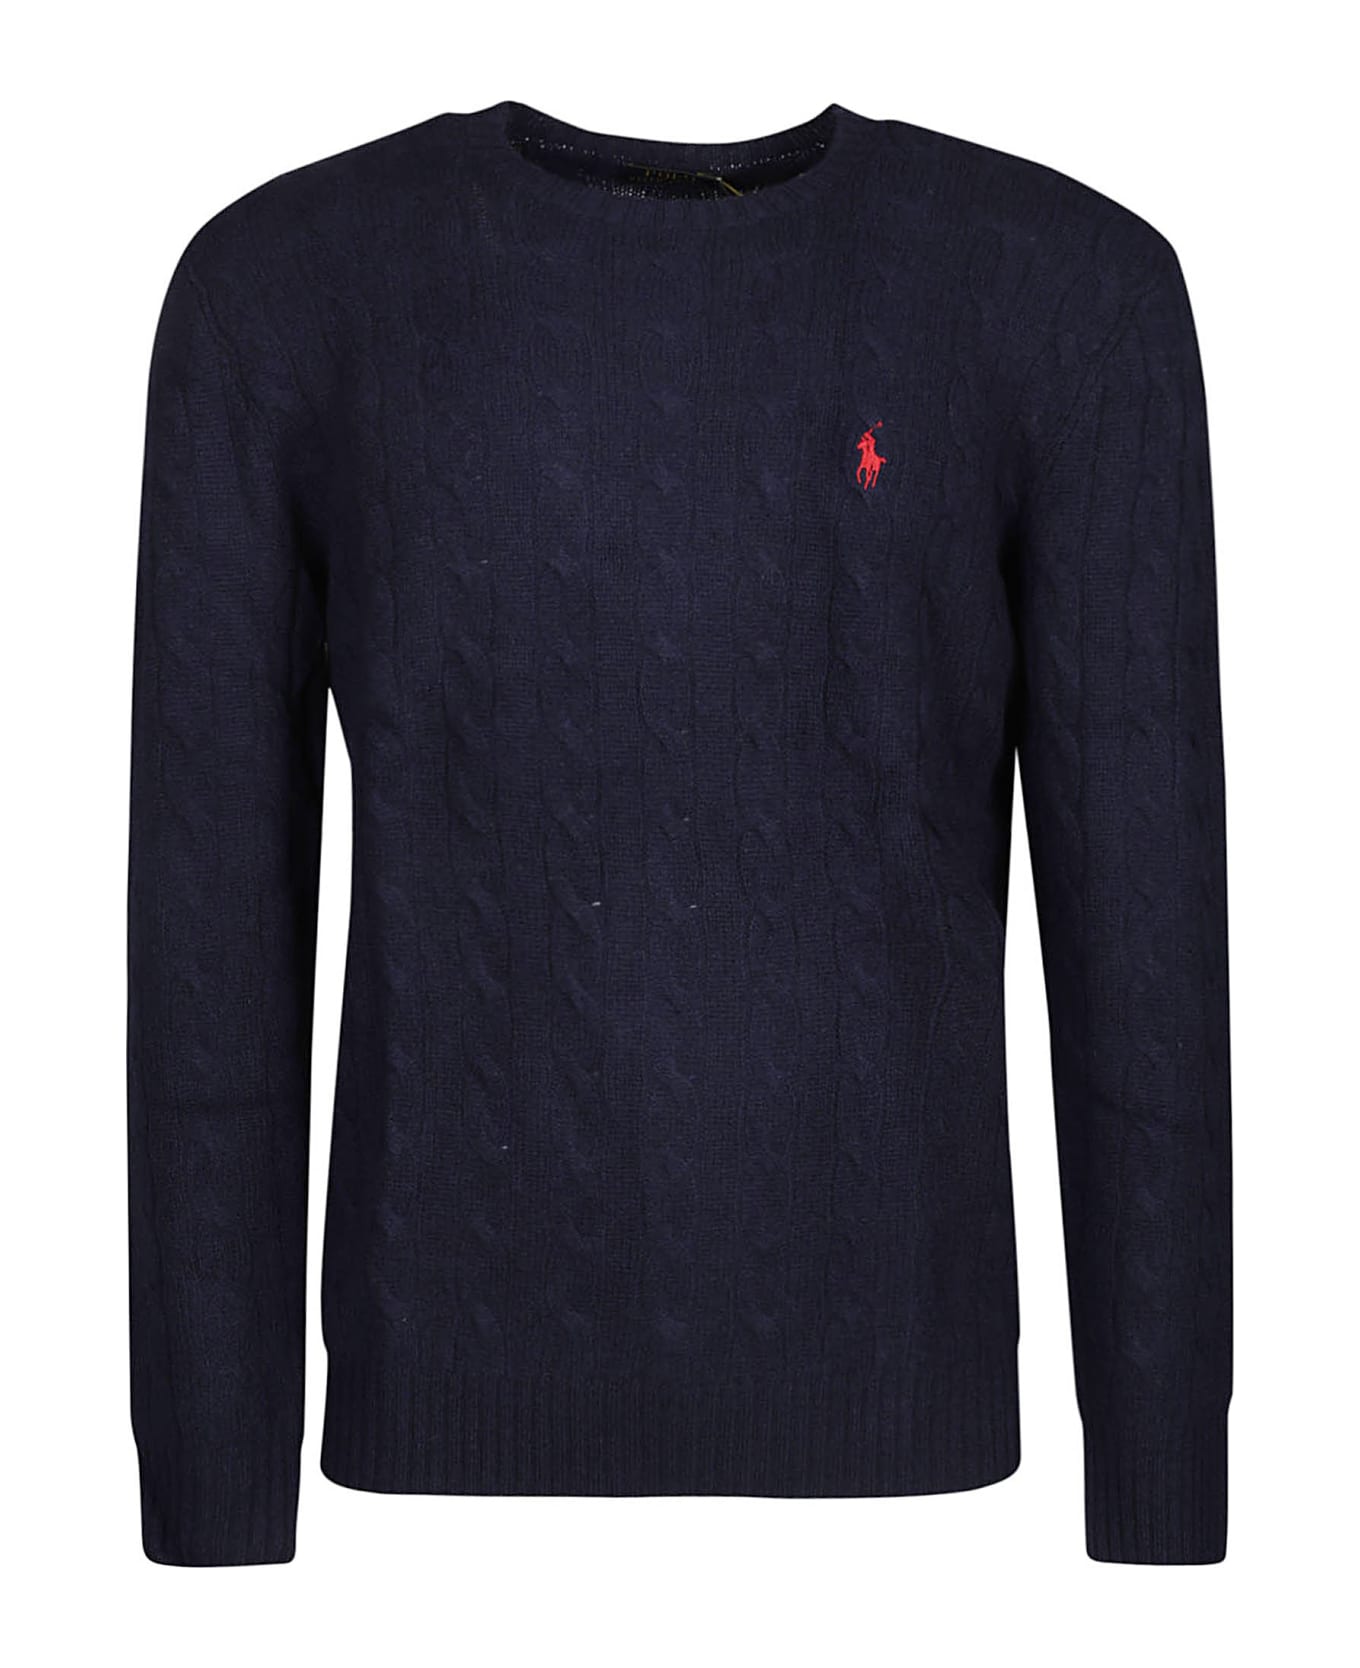 Ralph Lauren Long Sleeve Sweater - Hunter Navy